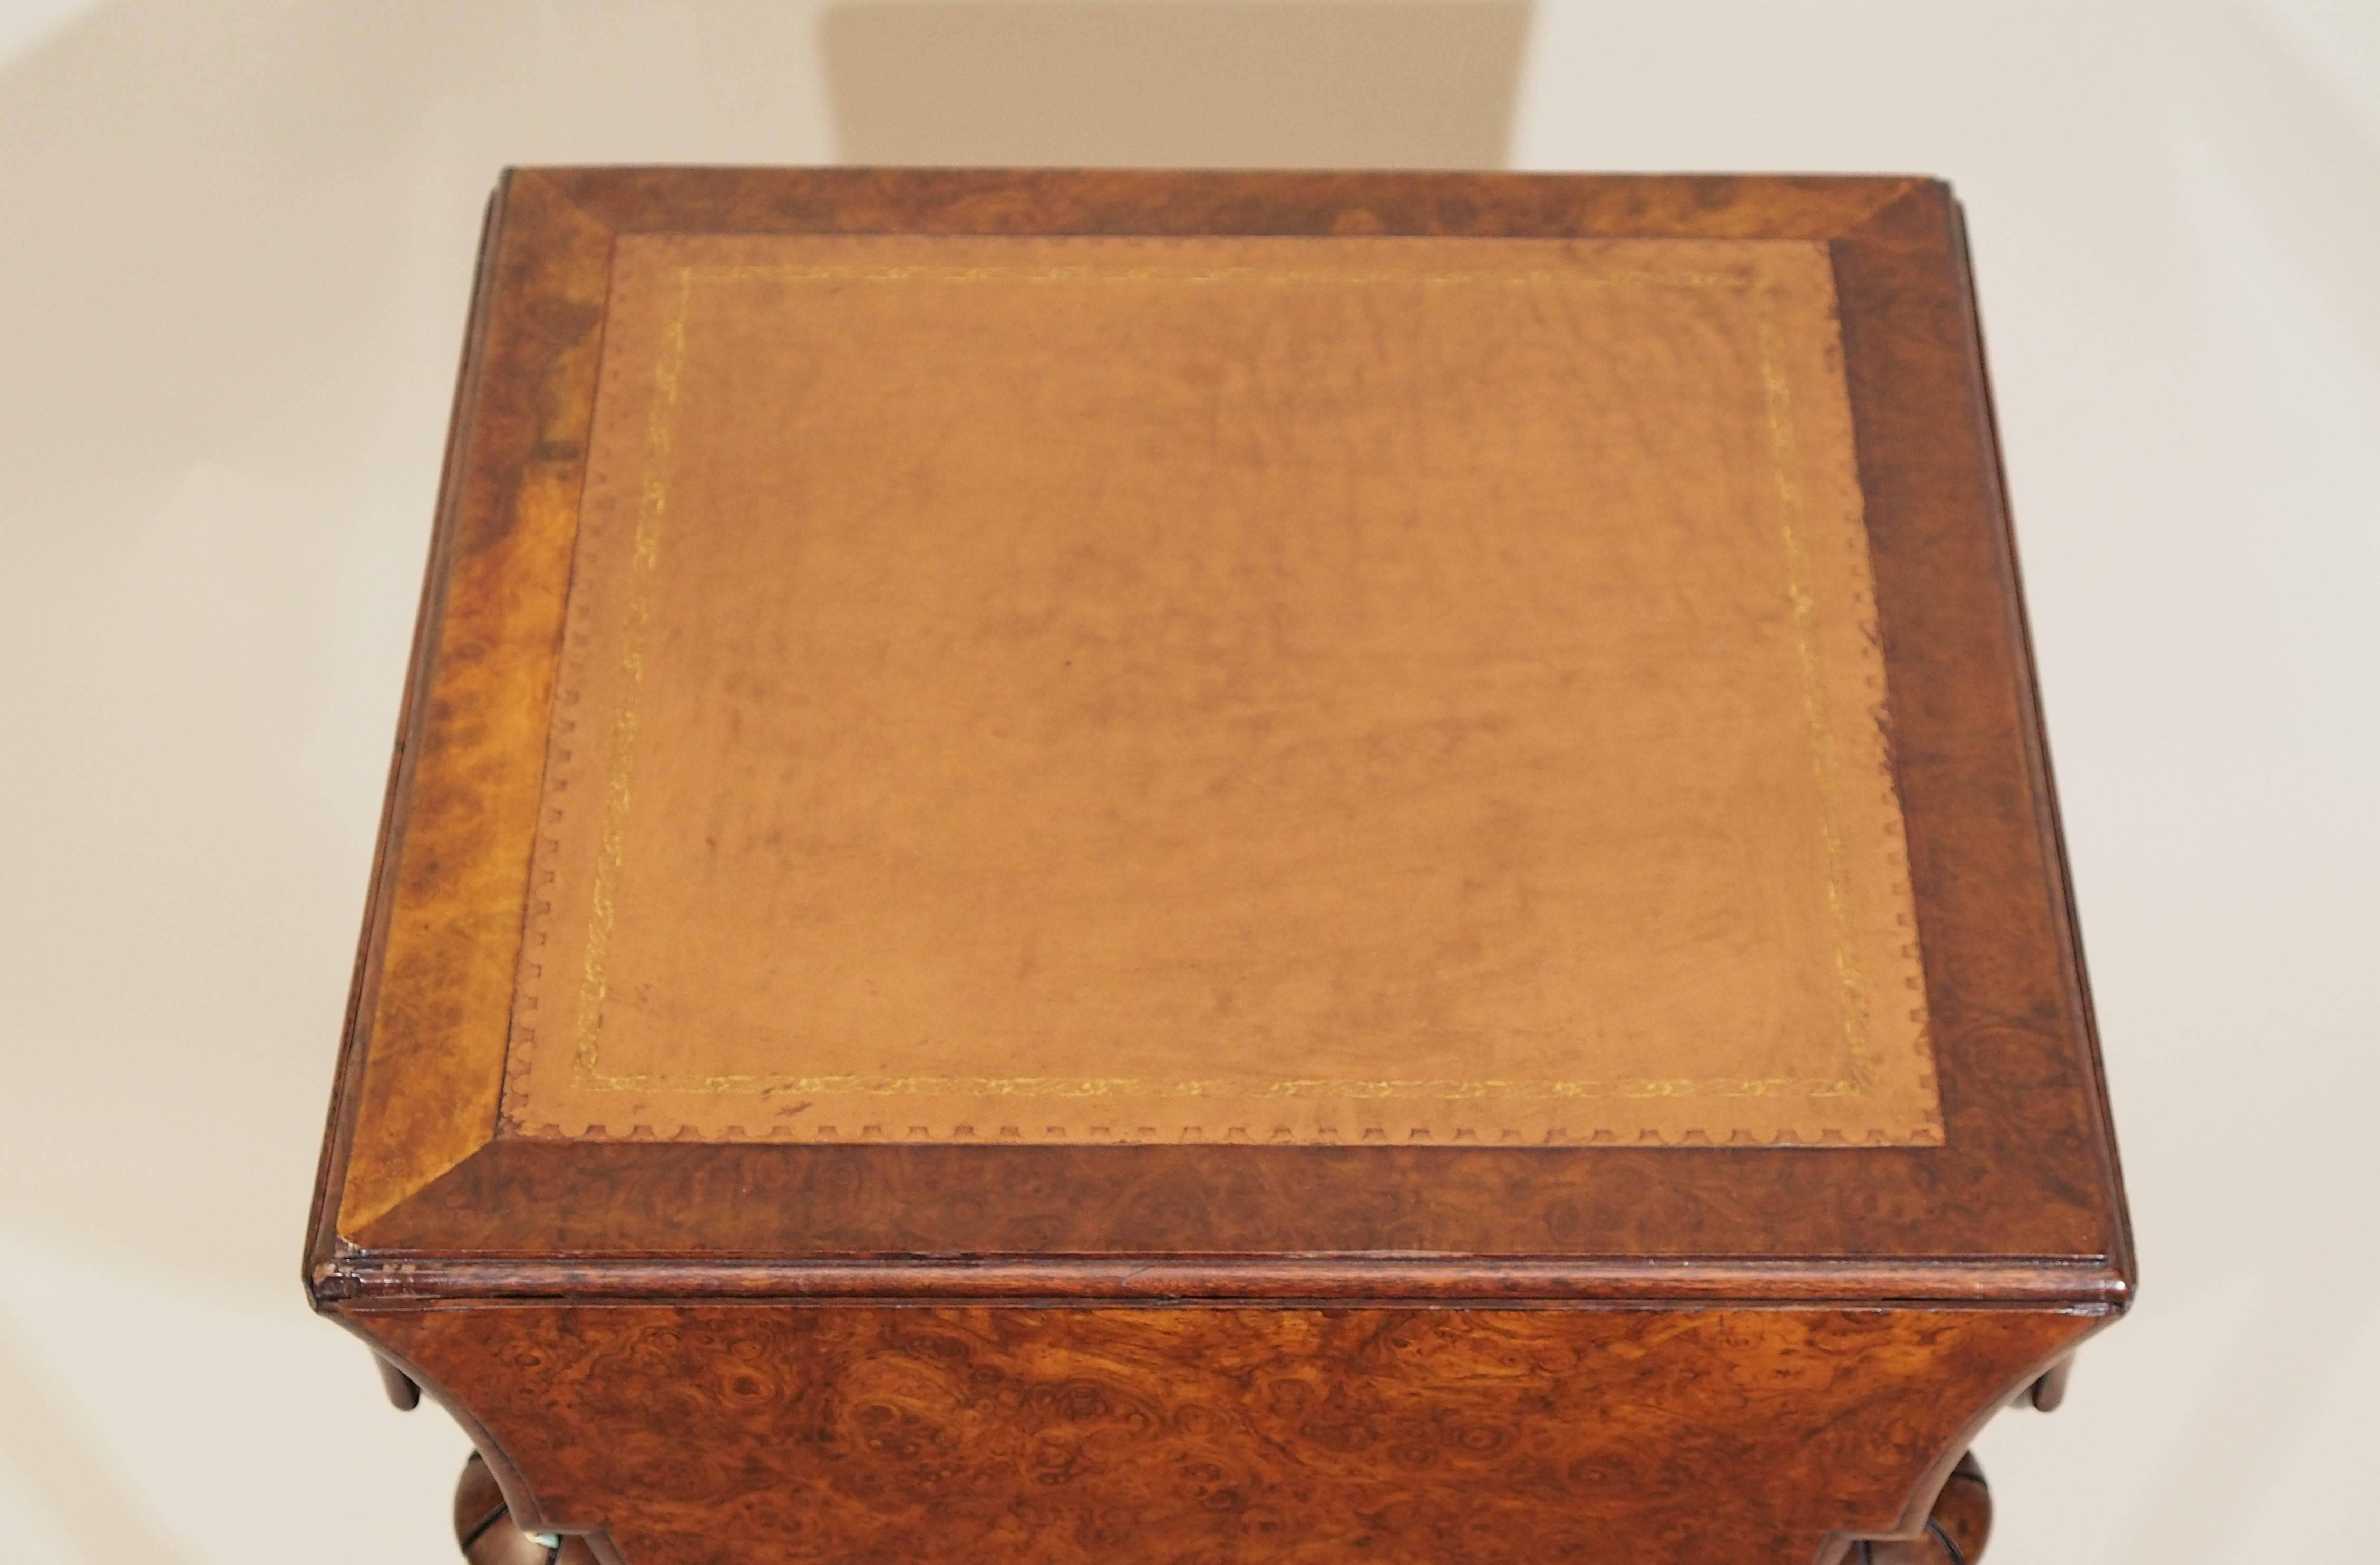 Ces pièces en ronce sont les préférées de nos clients. Cette table à cartes pliante est un bel exemple du travail du bois réalisé à la fin du 19e siècle.